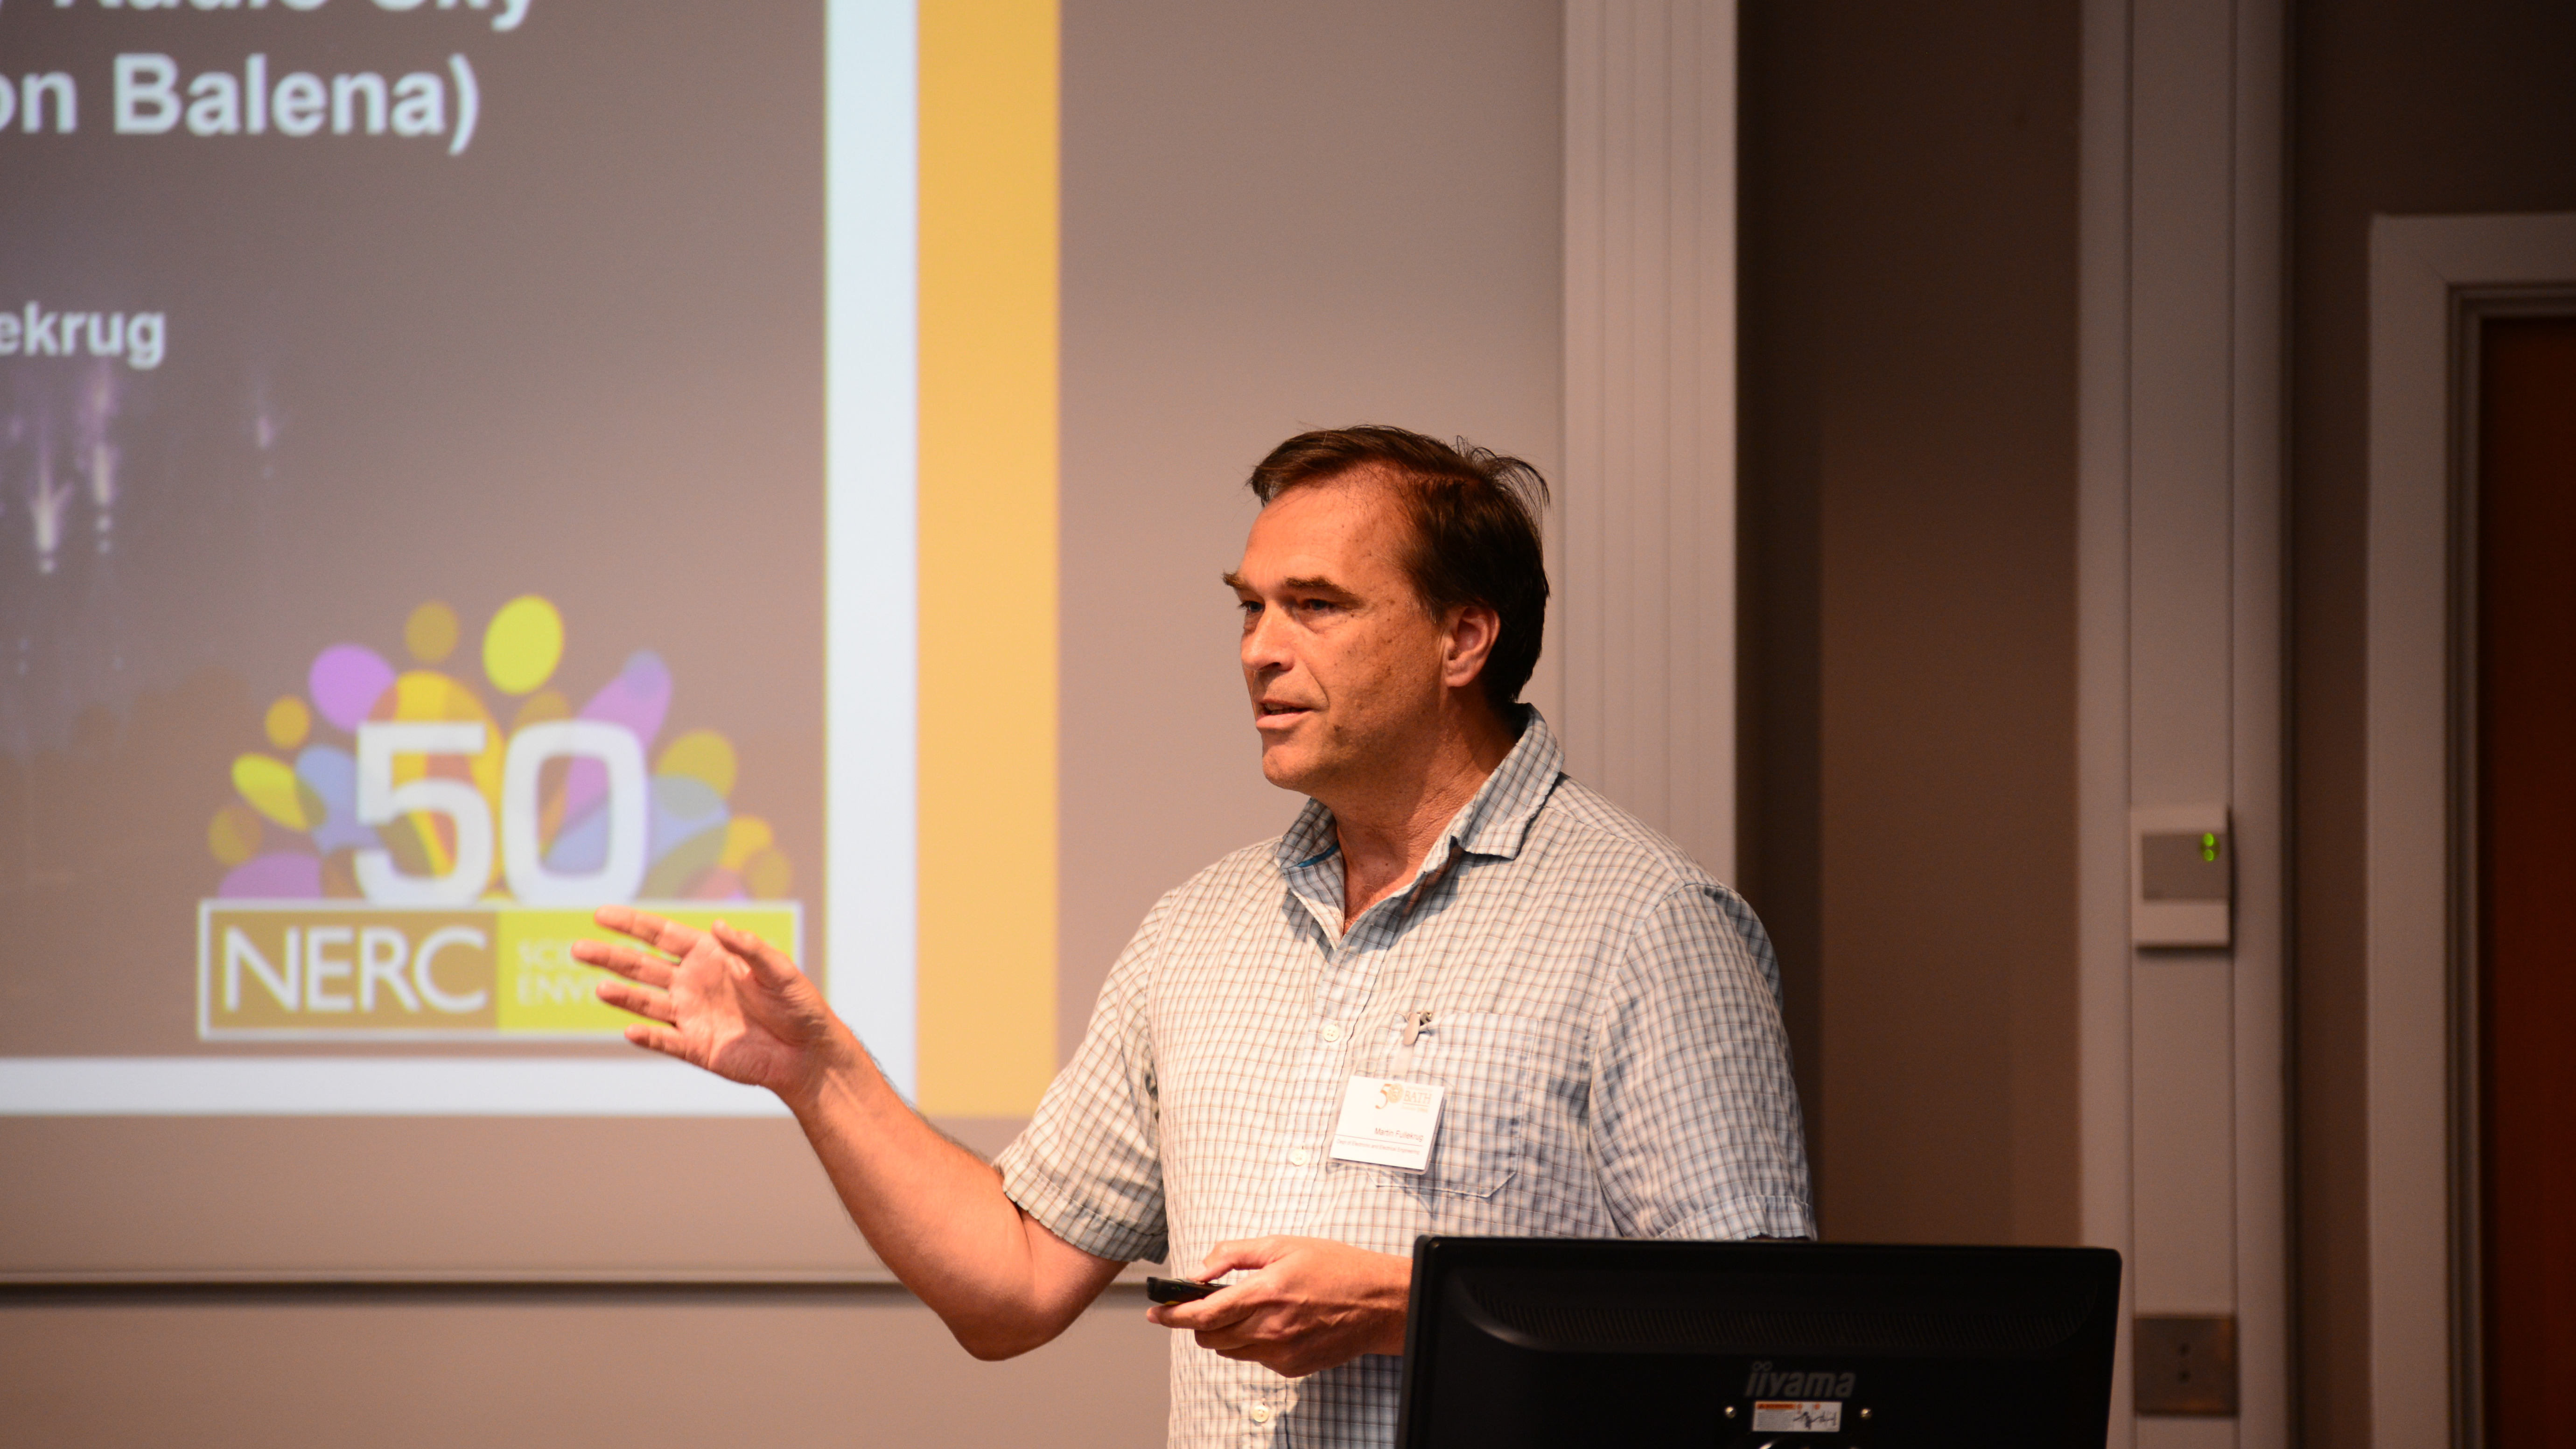 Doctor Martin Fullekrug holding his presentation